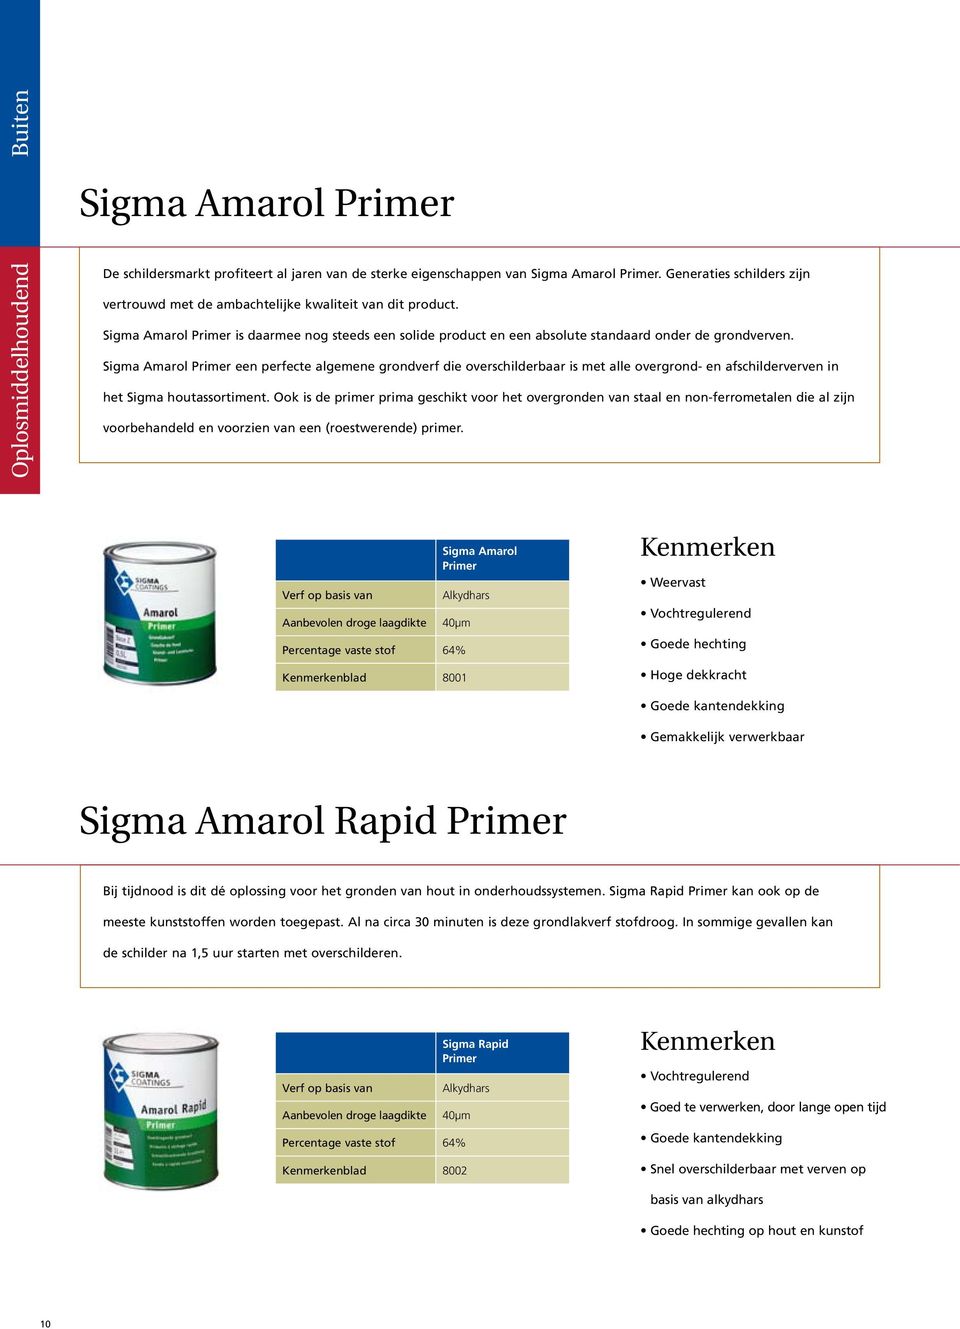 Sigma Amarol Primer een perfecte algemene grondverf die overschilderbaar is met alle overgrond- en afschilderverven in het Sigma houtassortiment.